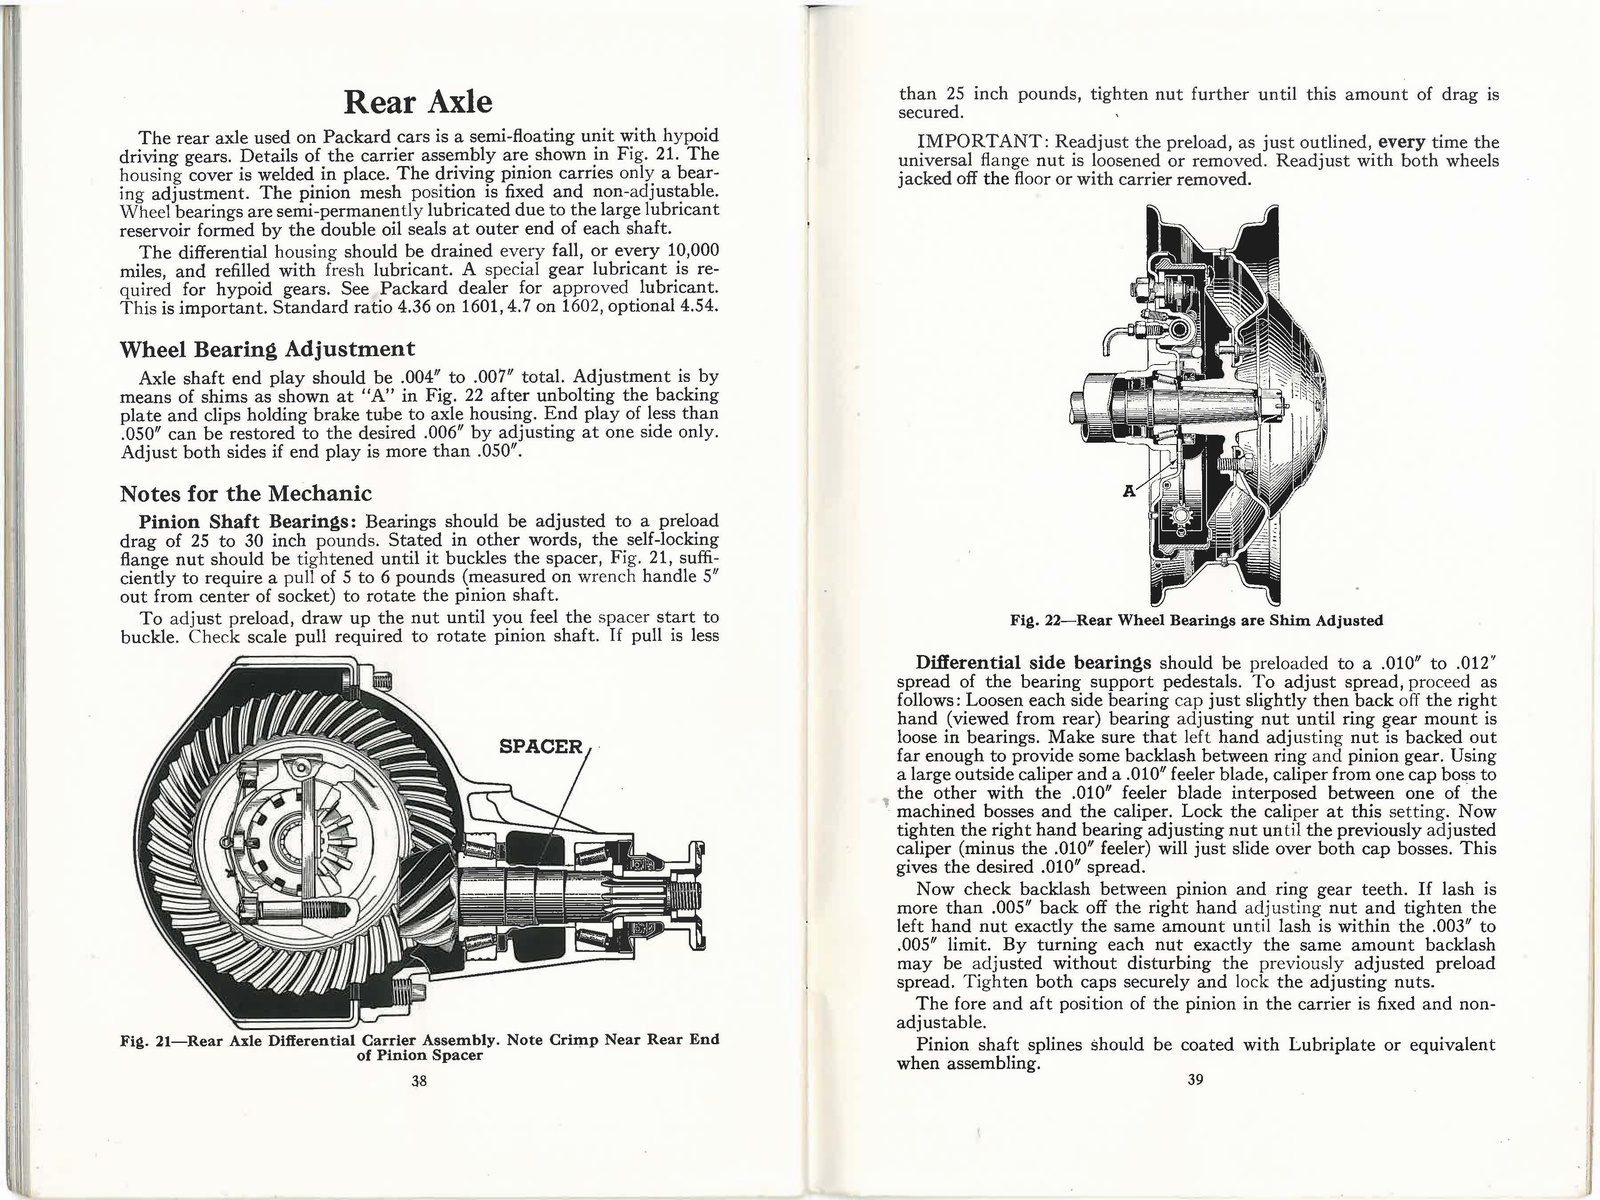 n_1938 Packard Eight Manual-38-39.jpg